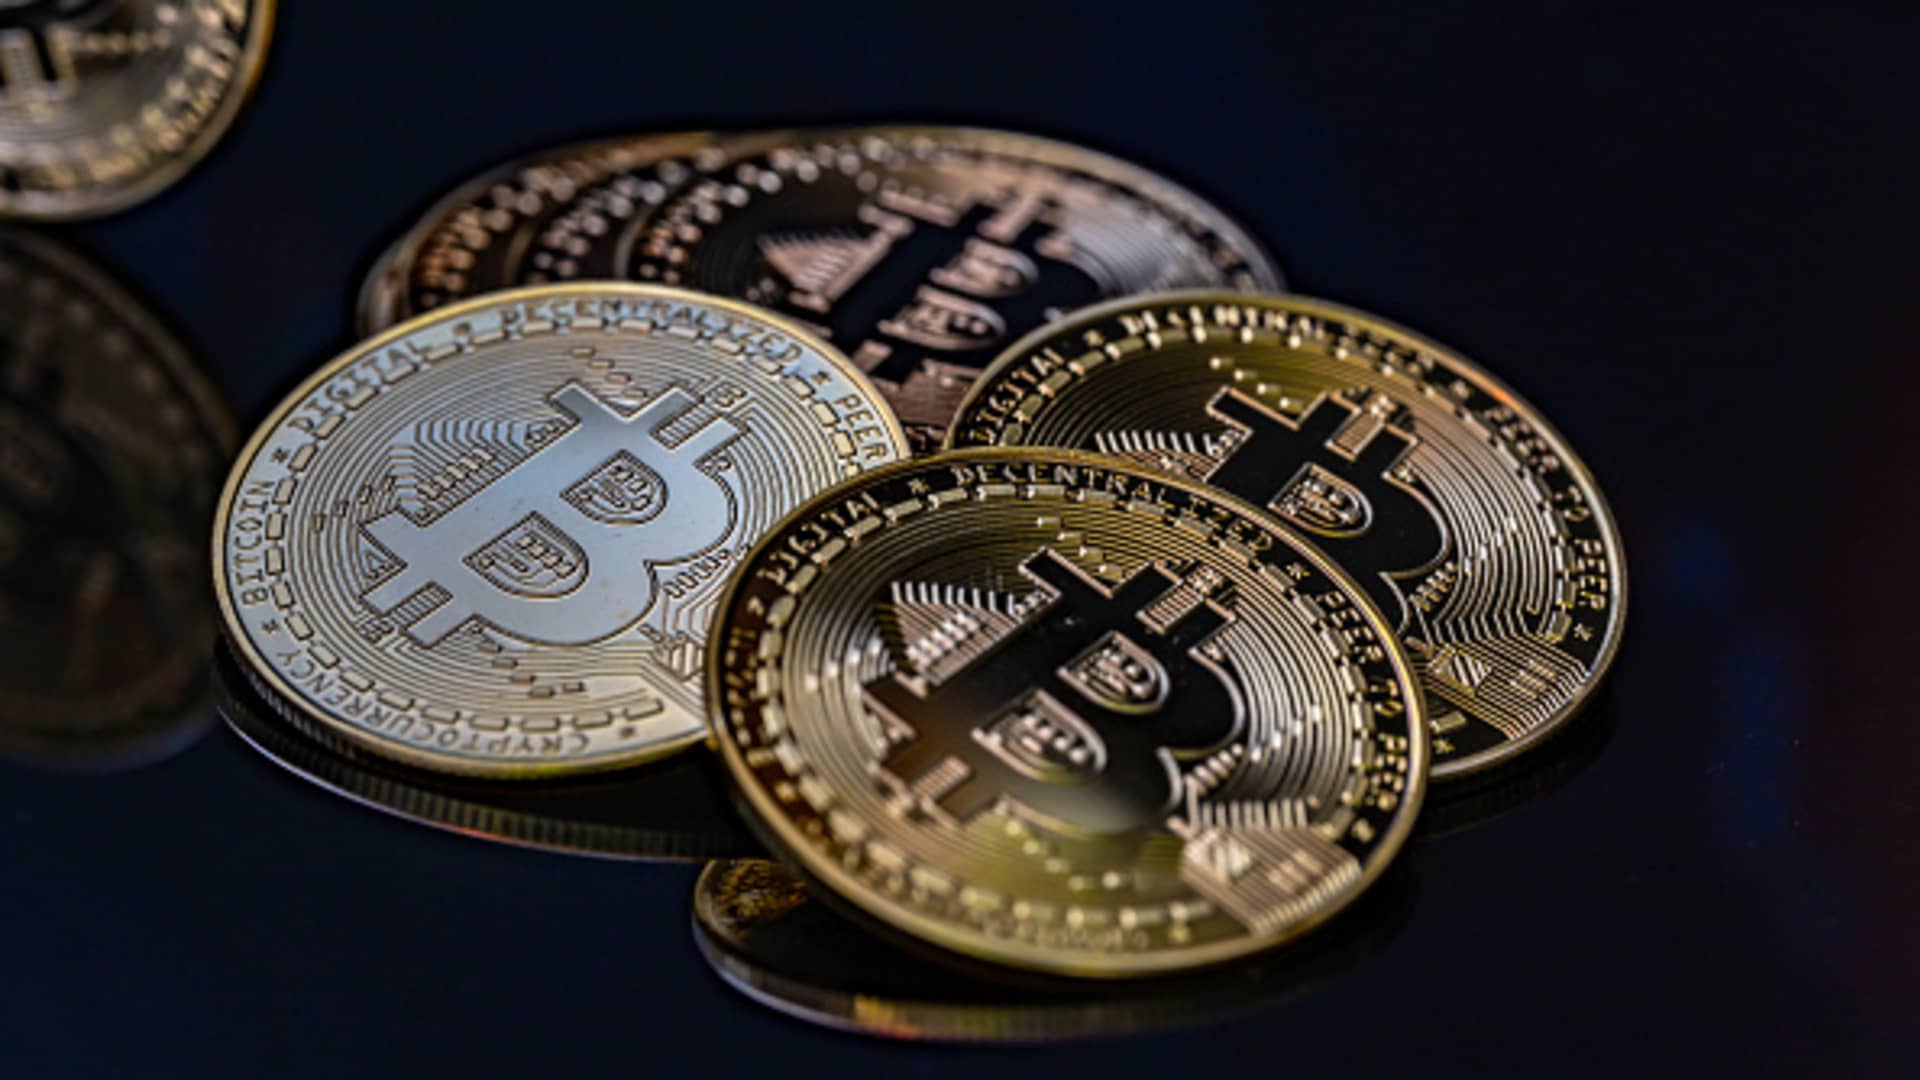 Bitcoin has bullish outlook despite pullback